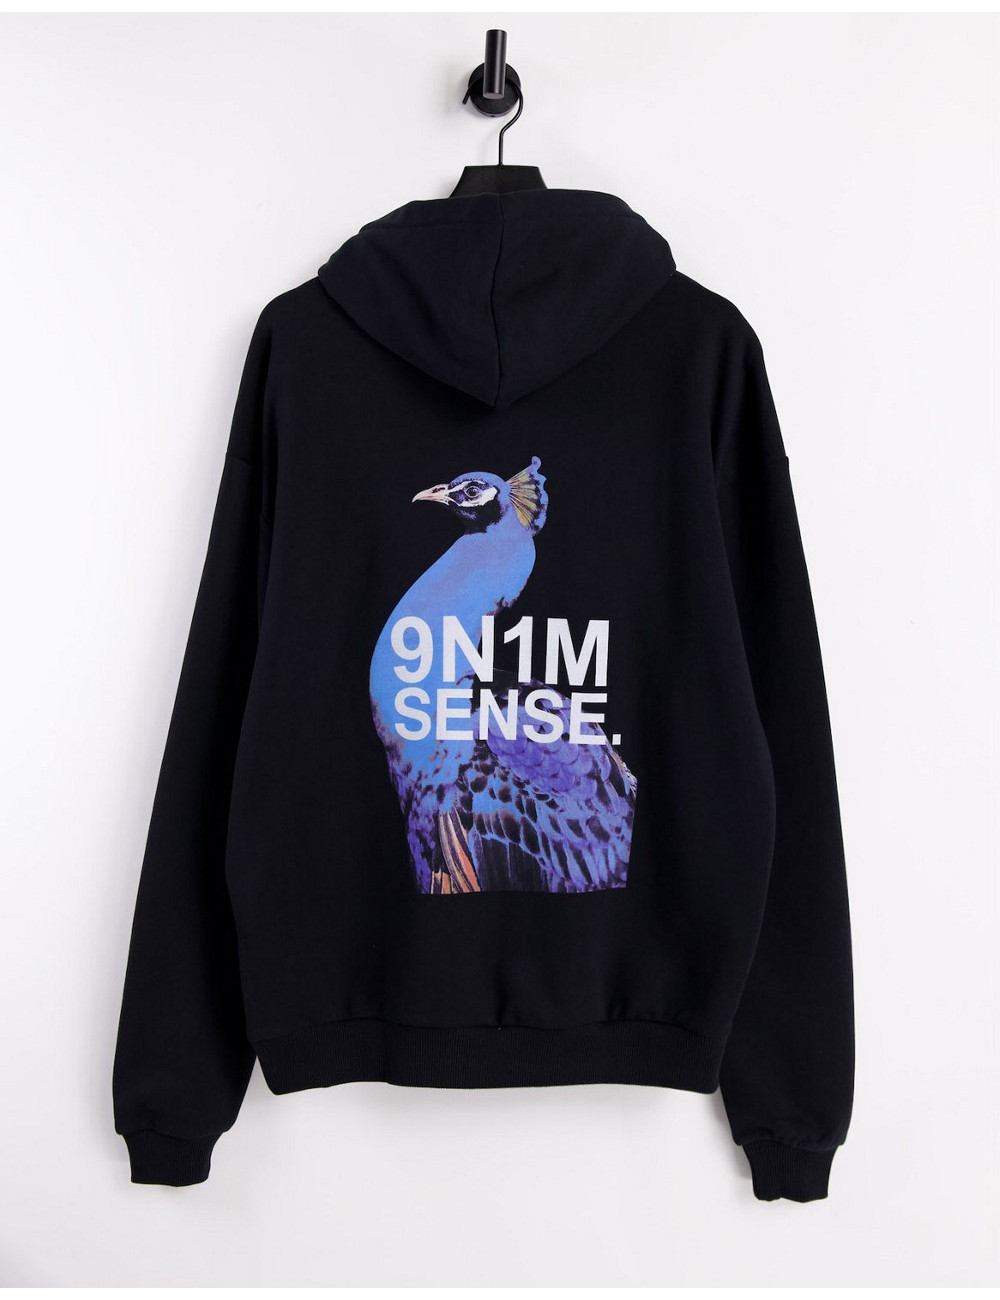 9N1M SENSE hoodie with back...